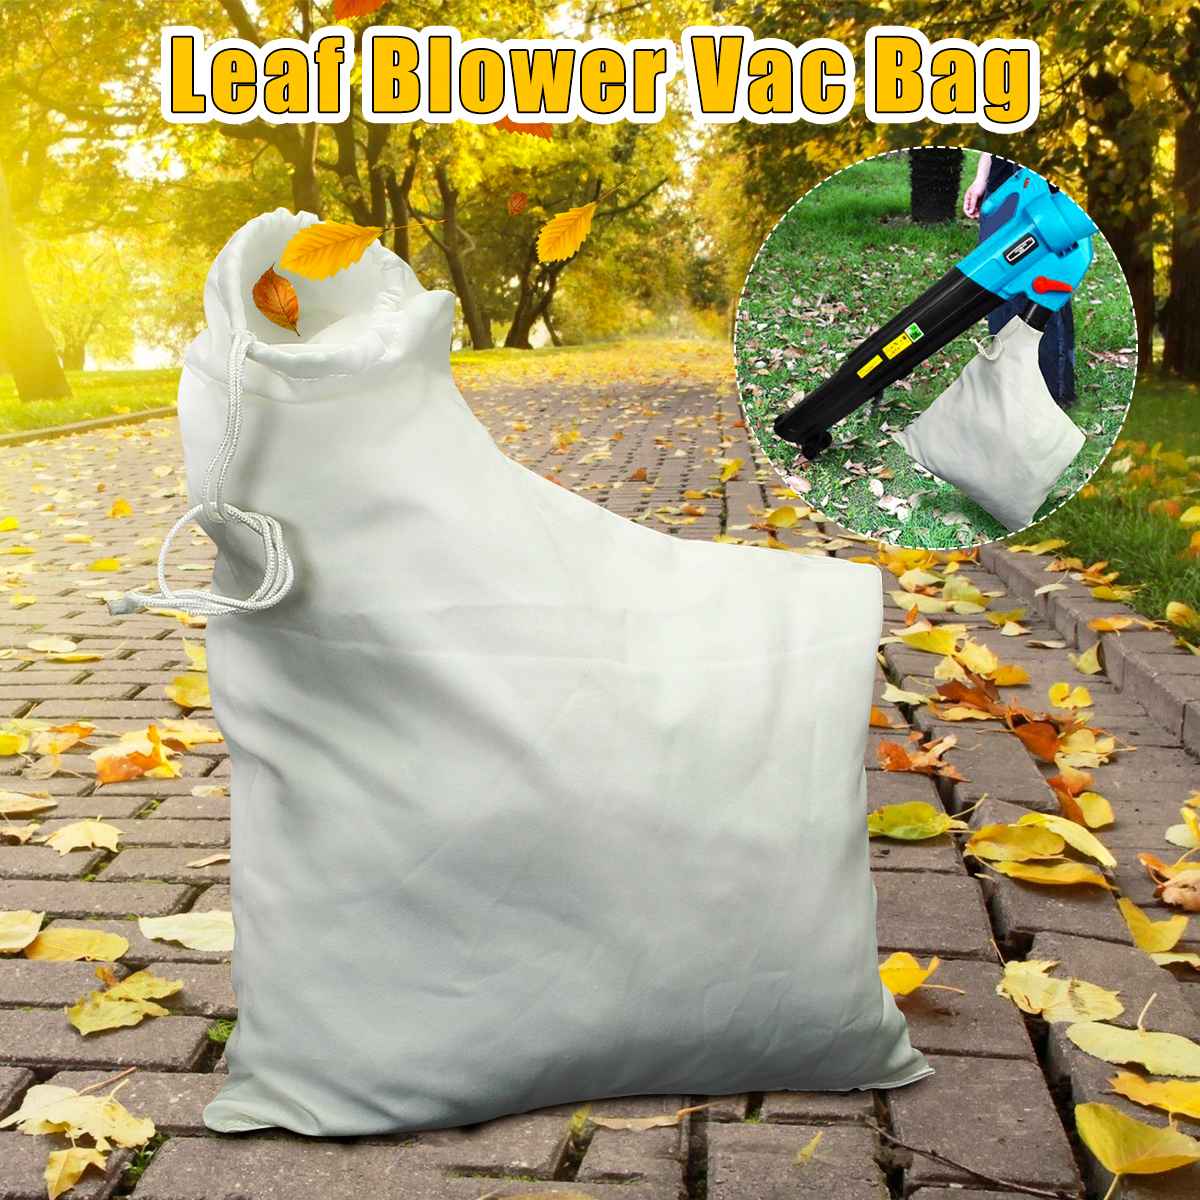 Leaf Blower Vacuum Bag fit for Weed Eater Barracuda 2595 Mulcher Lawn Yard Shredder Garden Tool Storage Bag Accessories